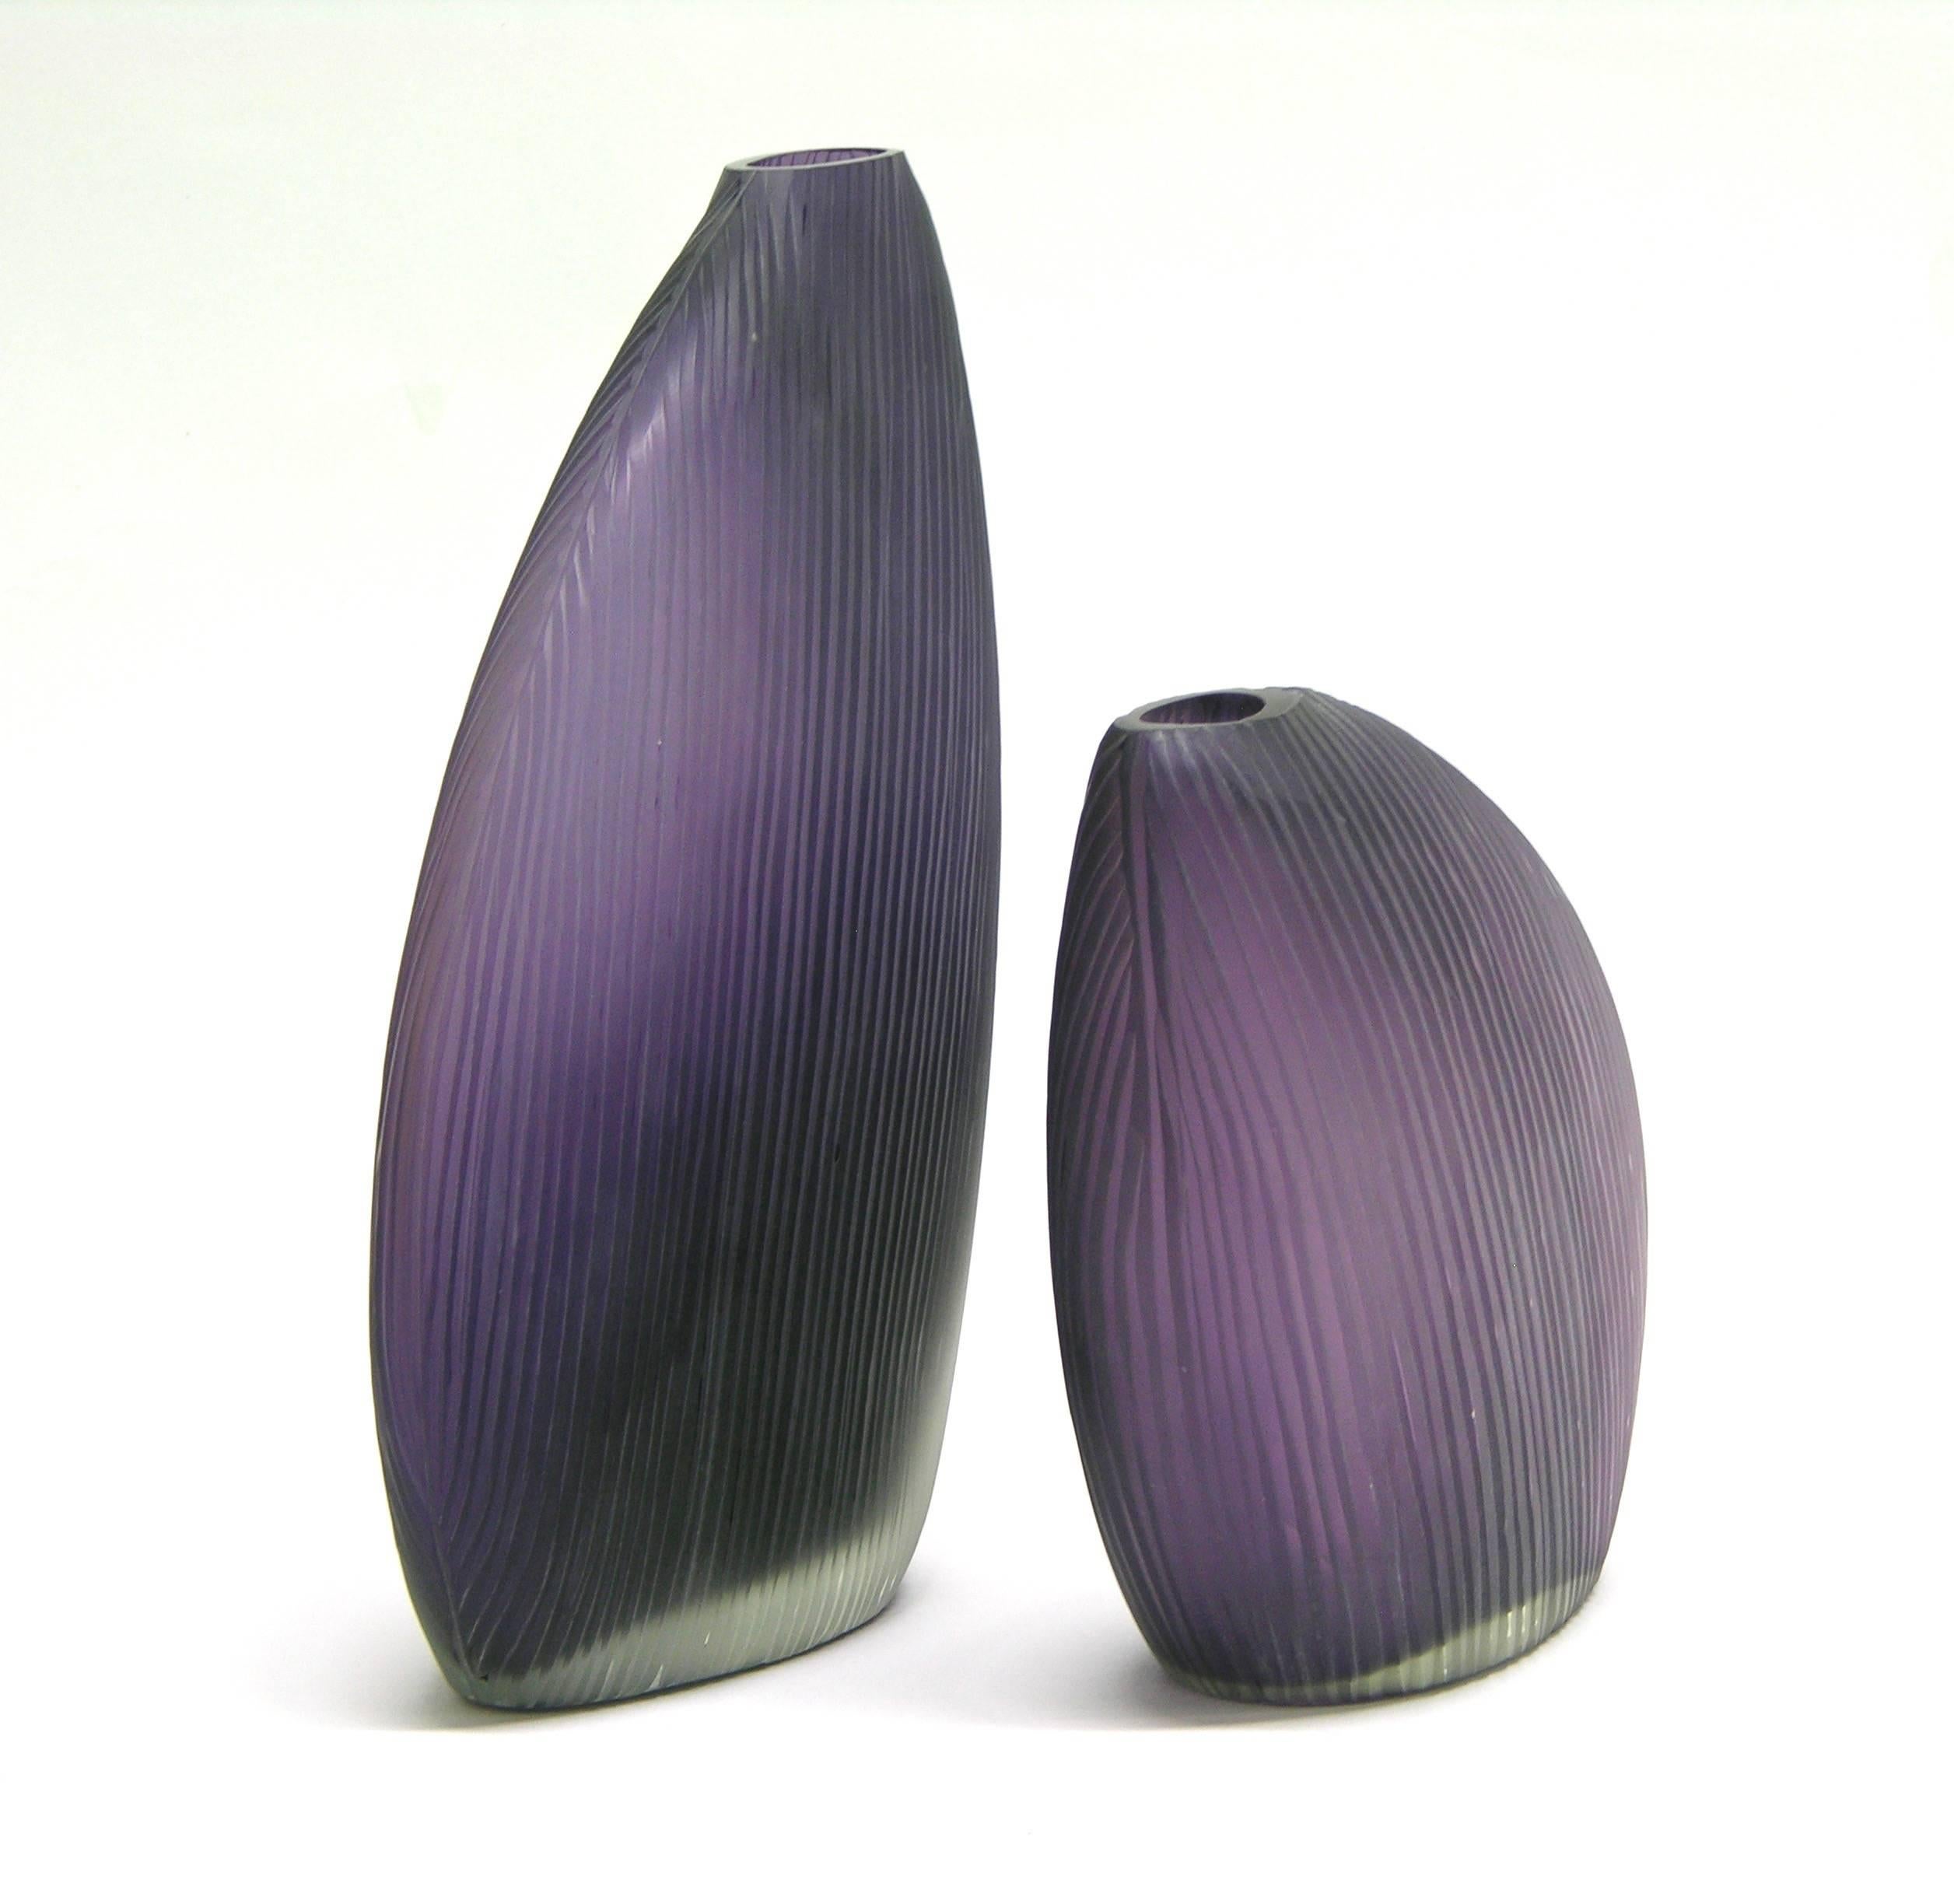 Organic Modern Vistosi 1970s Italian Modern Pair of Organic Purple Murano Glass Vases